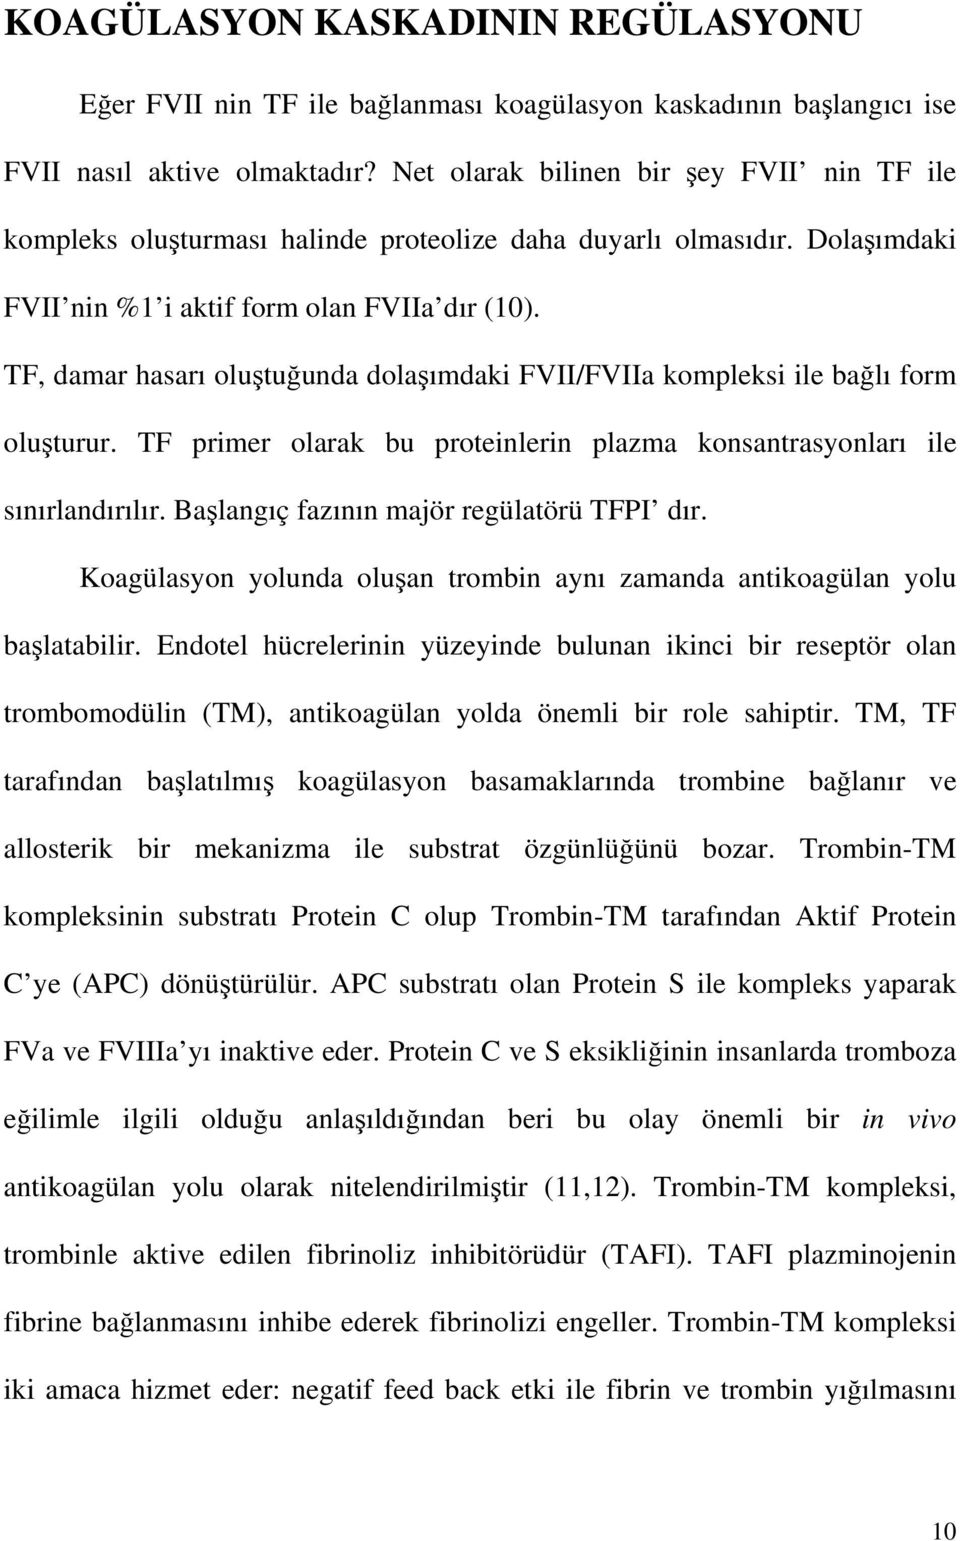 TF, damar hasarı oluştuğunda dolaşımdaki FVII/FVIIa kompleksi ile bağlı form oluşturur. TF primer olarak bu proteinlerin plazma konsantrasyonları ile sınırlandırılır.